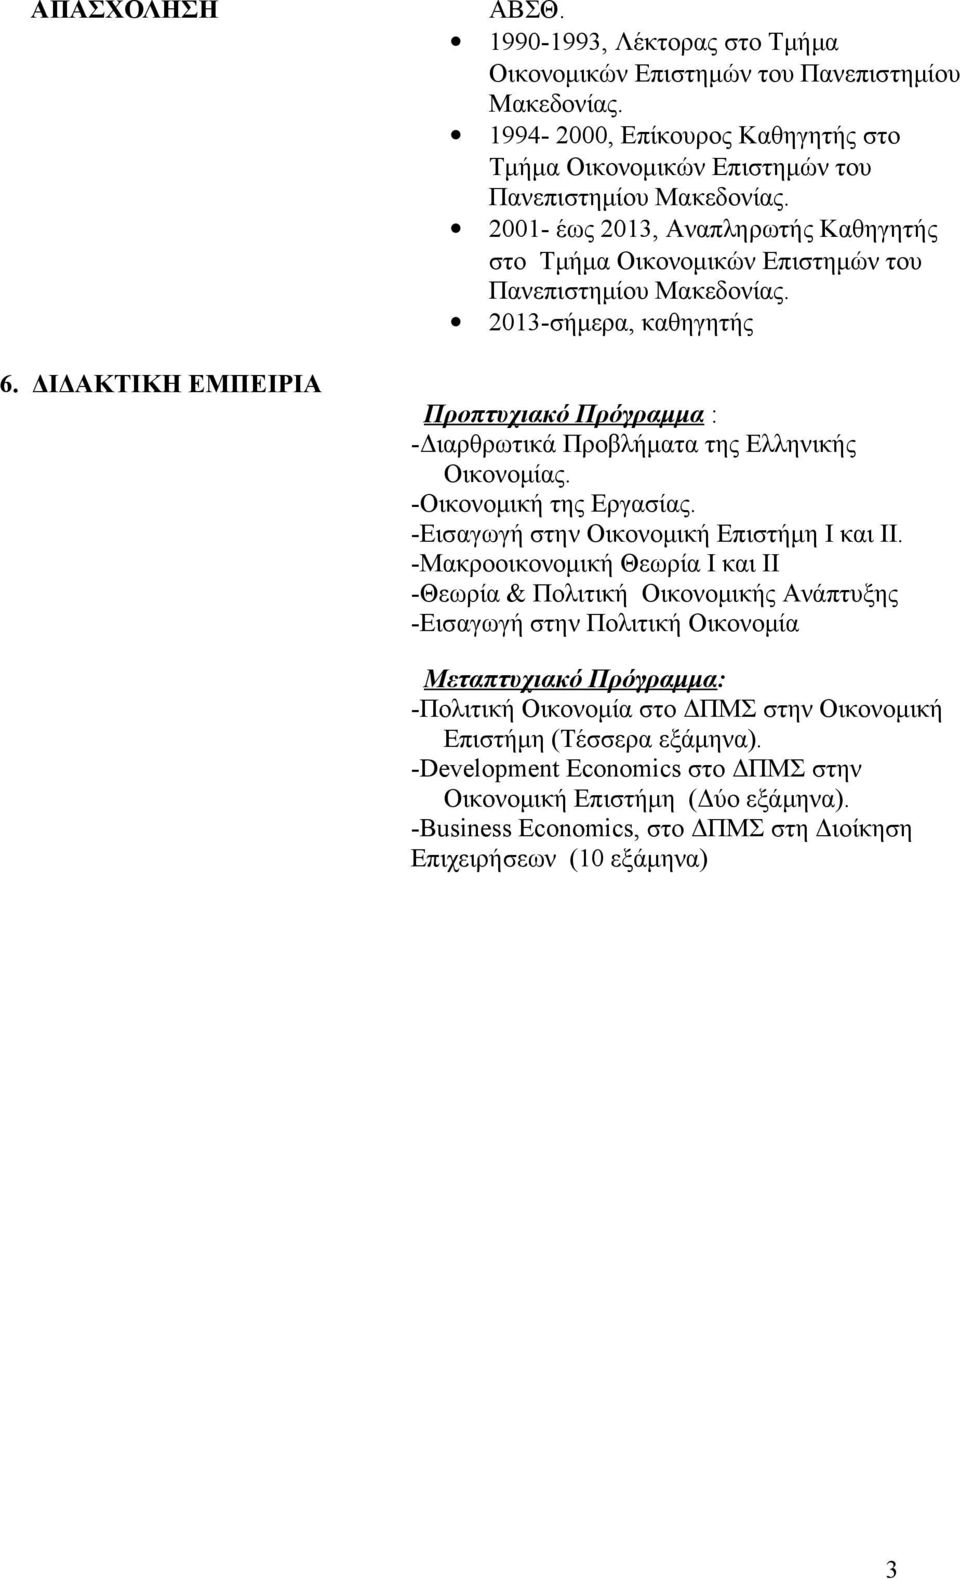 ΔIΔAKTIKH EMΠEIPIA Προπτυχιακό Πρόγραμμα : -Διαρθρωτικά Προβλήματα της Ελληνικής Οικονομίας. -Οικονομική της Εργασίας. -Εισαγωγή στην Οικονομική Επιστήμη I και II.